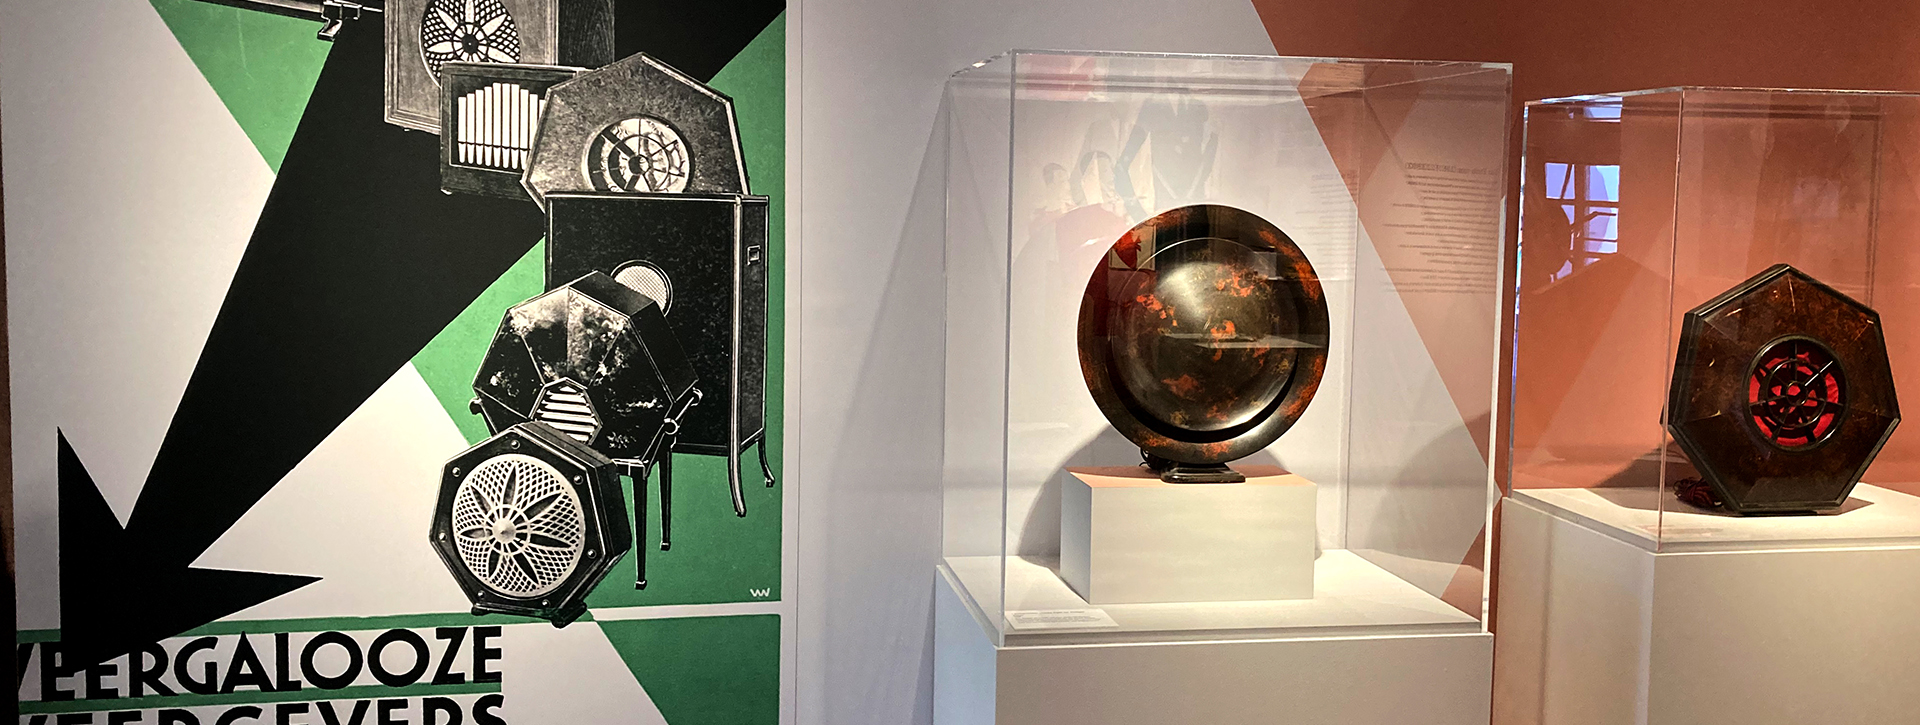 Blick in die Ausstellung mit altem Werbeplakat zu Lautsprechern, daneben in einer Vitrine dieselben Lautsprecher als Objekt aus Bakelit